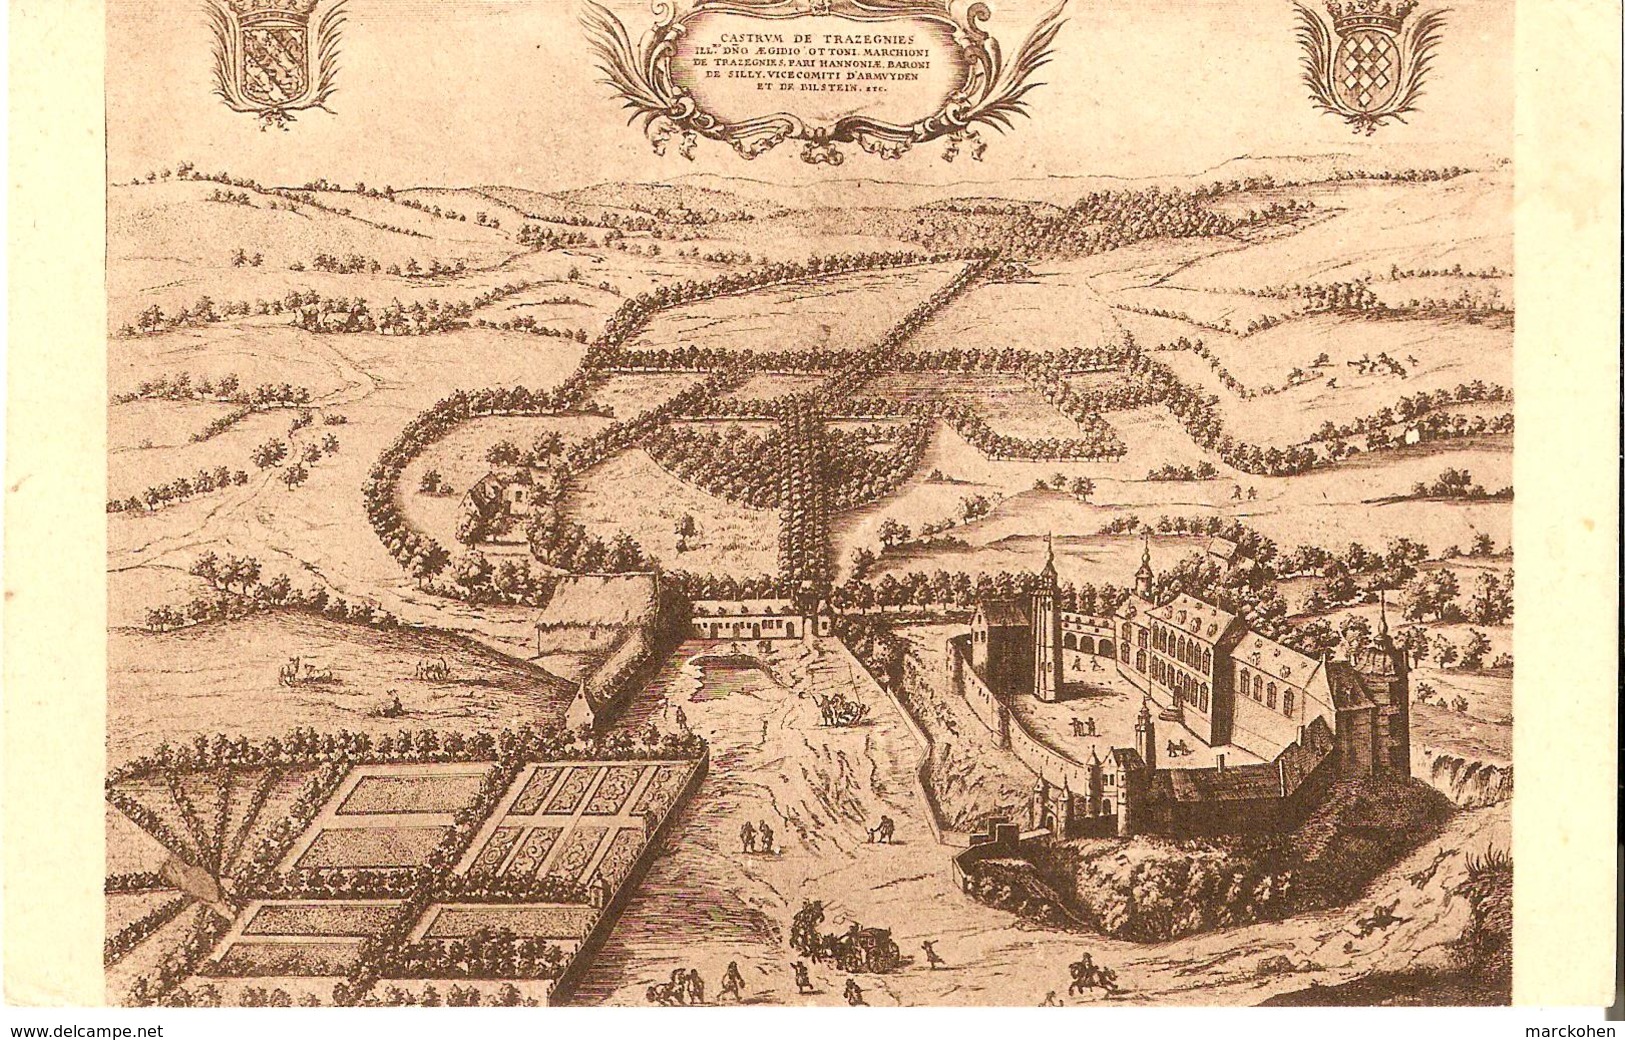 Courcelles (6183) : Le Château De Trazegnies, D'après Une Gravure Du Cabinet Des Estampes à Bruxelles. CPA. - Courcelles